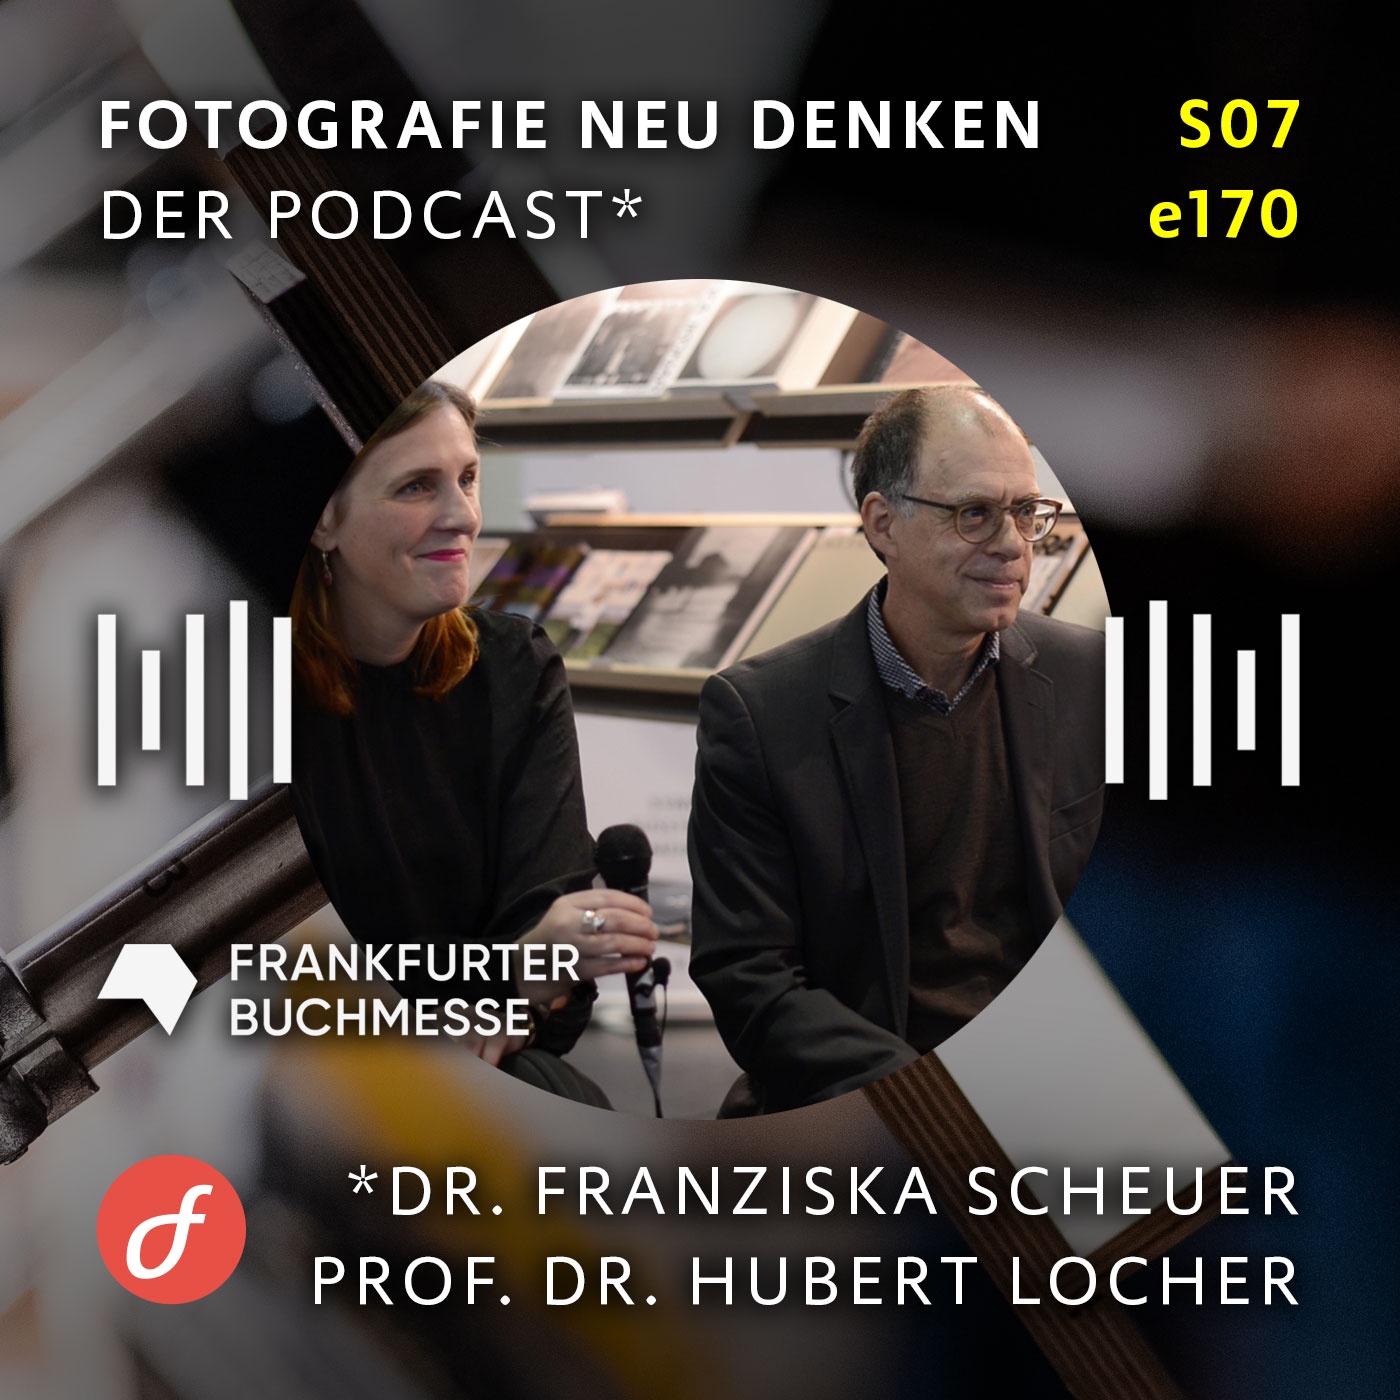 e170 Fotobuch-Talk. Dr. Franziska Scheuer und Prof. Dr. Hubert Locher. Rundbrief Fotografie. Frankfurter Buchmesse.